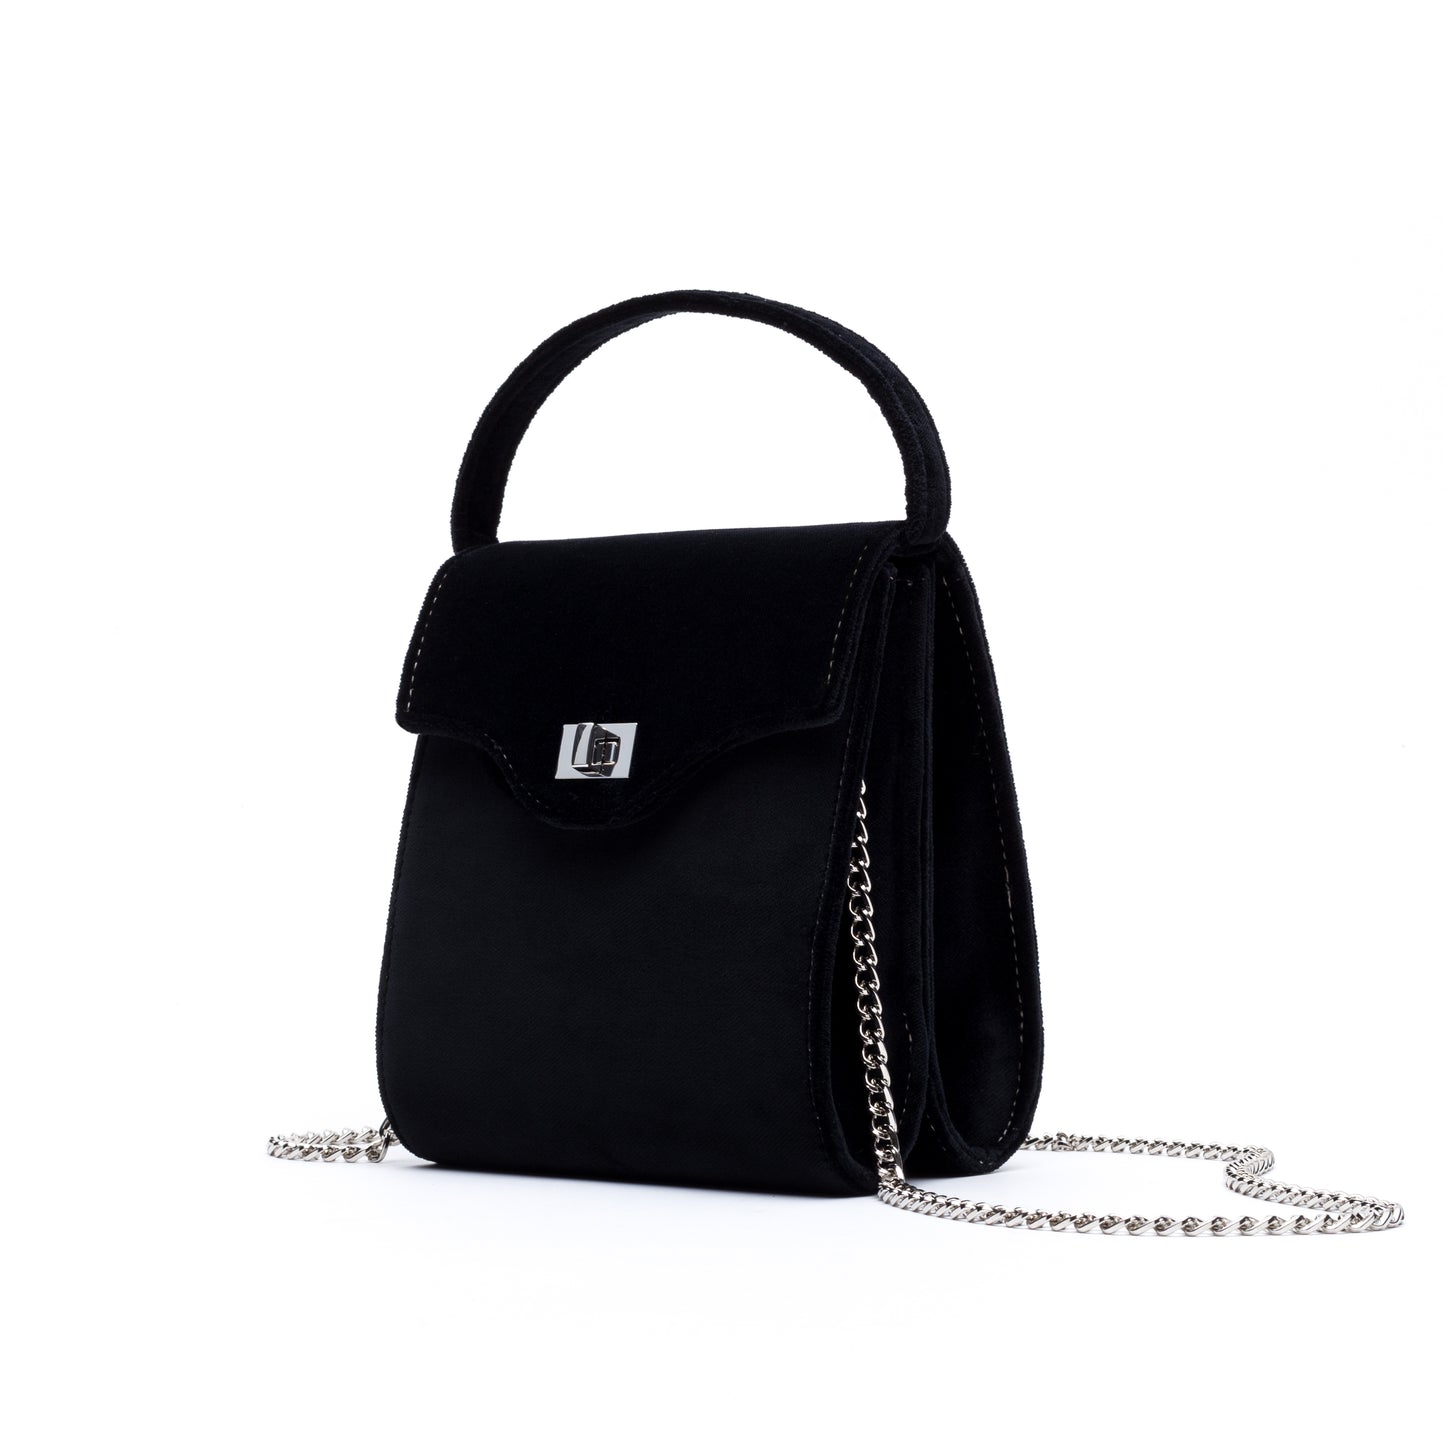 Cucci- Black Velvet Bag